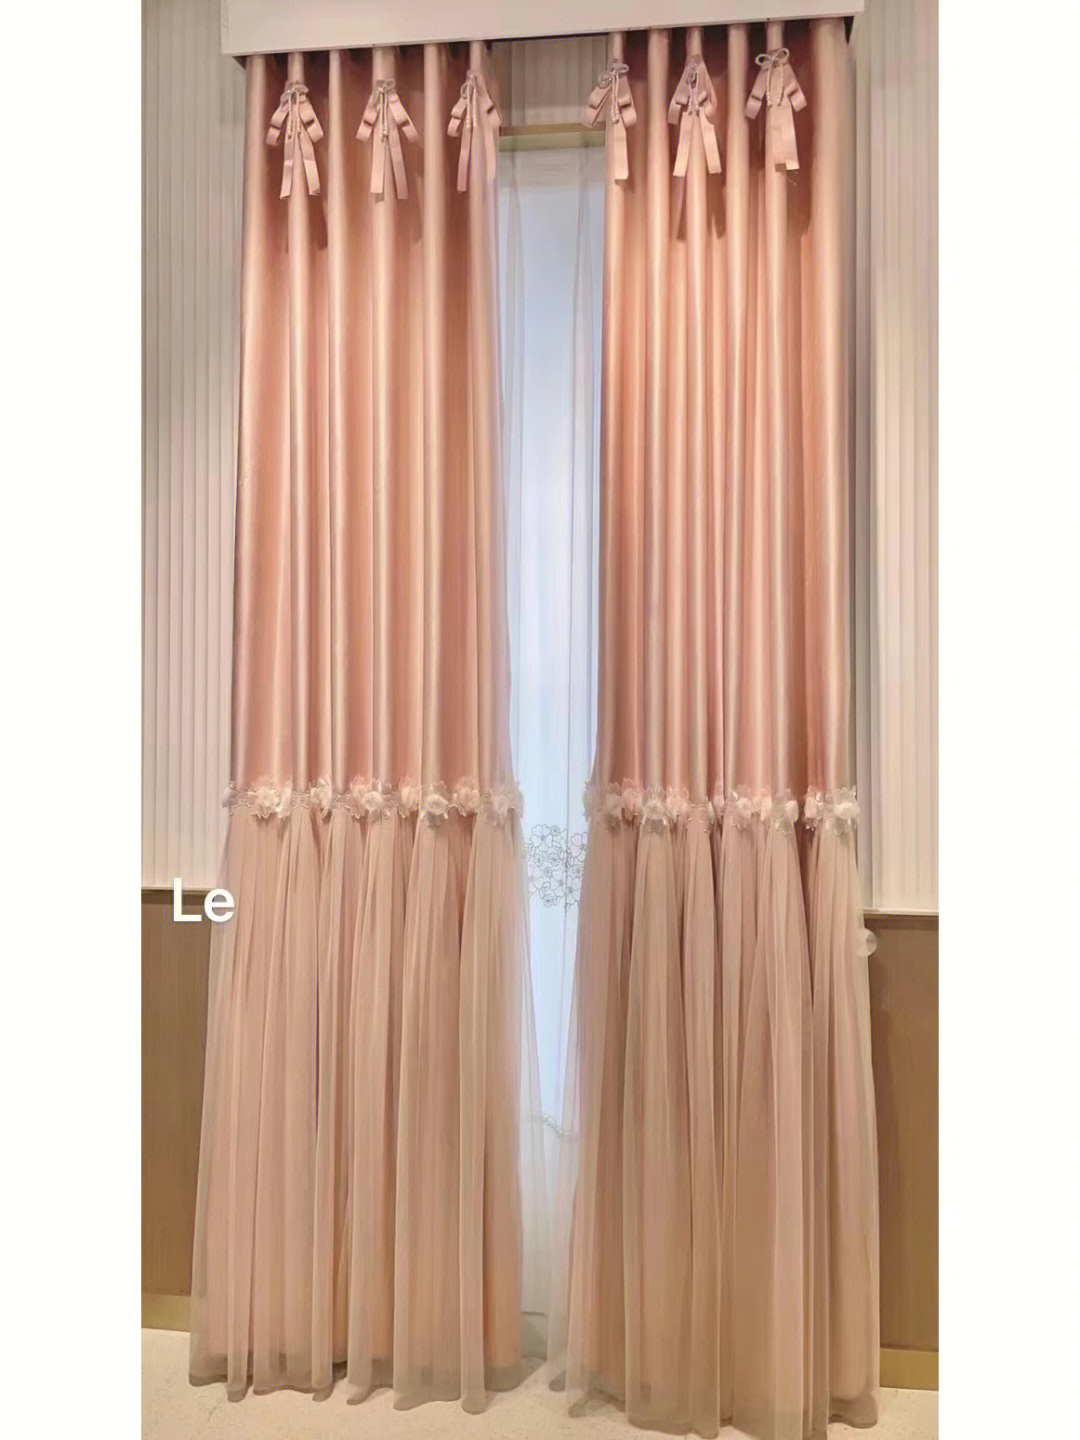 粉色与米色窗帘拼接图片